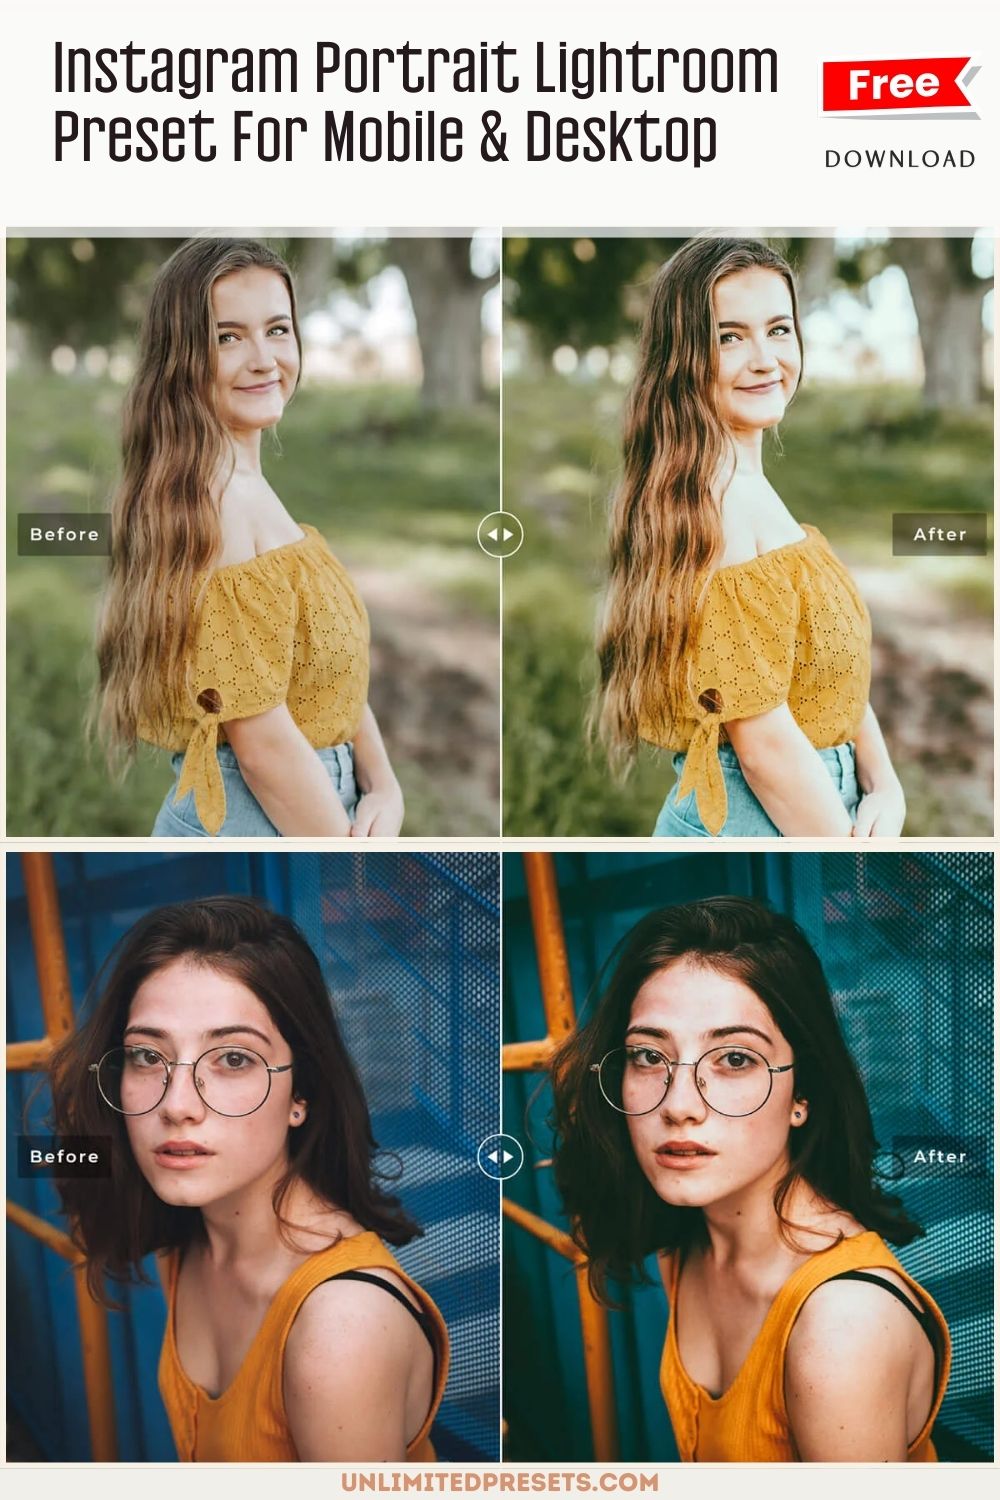 Instagram Portrait Lightroom Preset For Mobile & Desktop